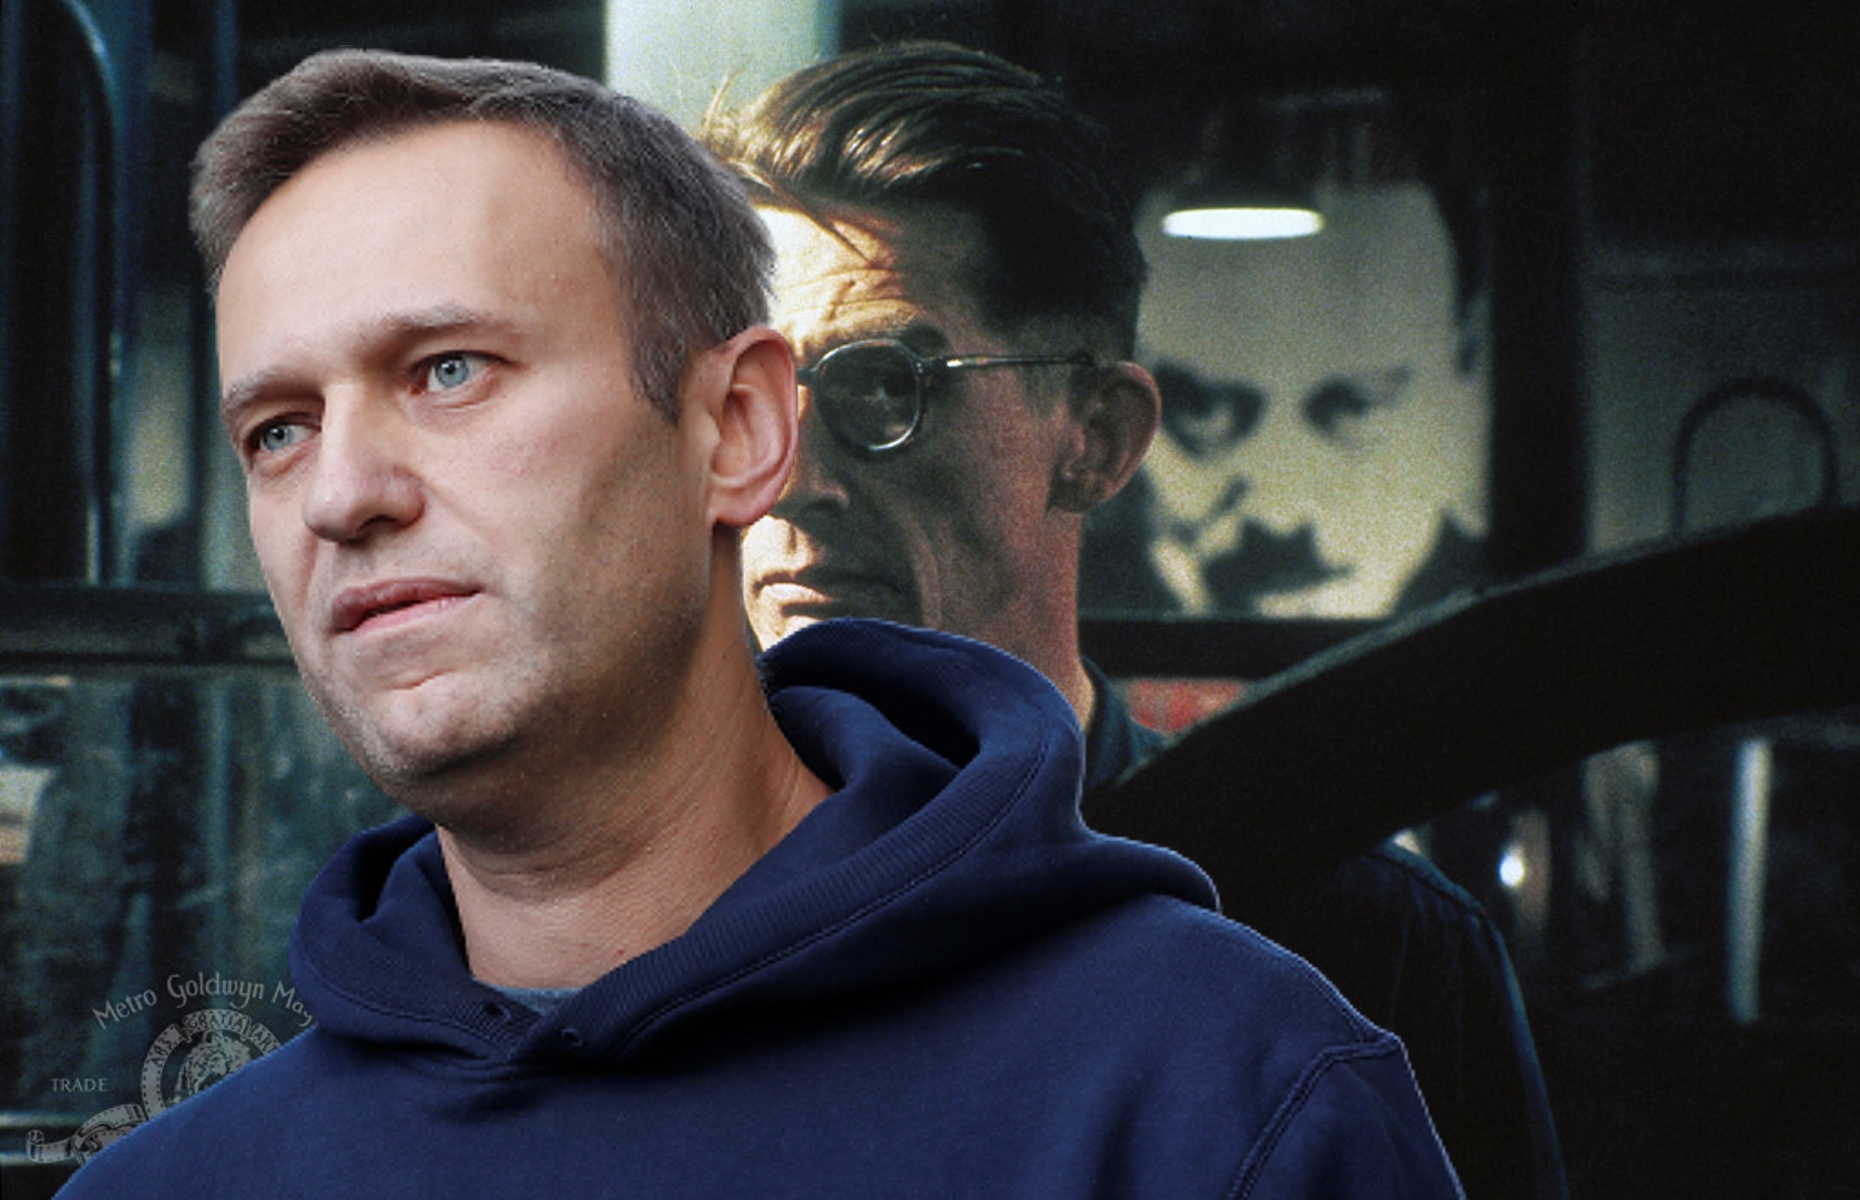 Оруэлл VS Навальный: кого больше обидел Большой Брат?